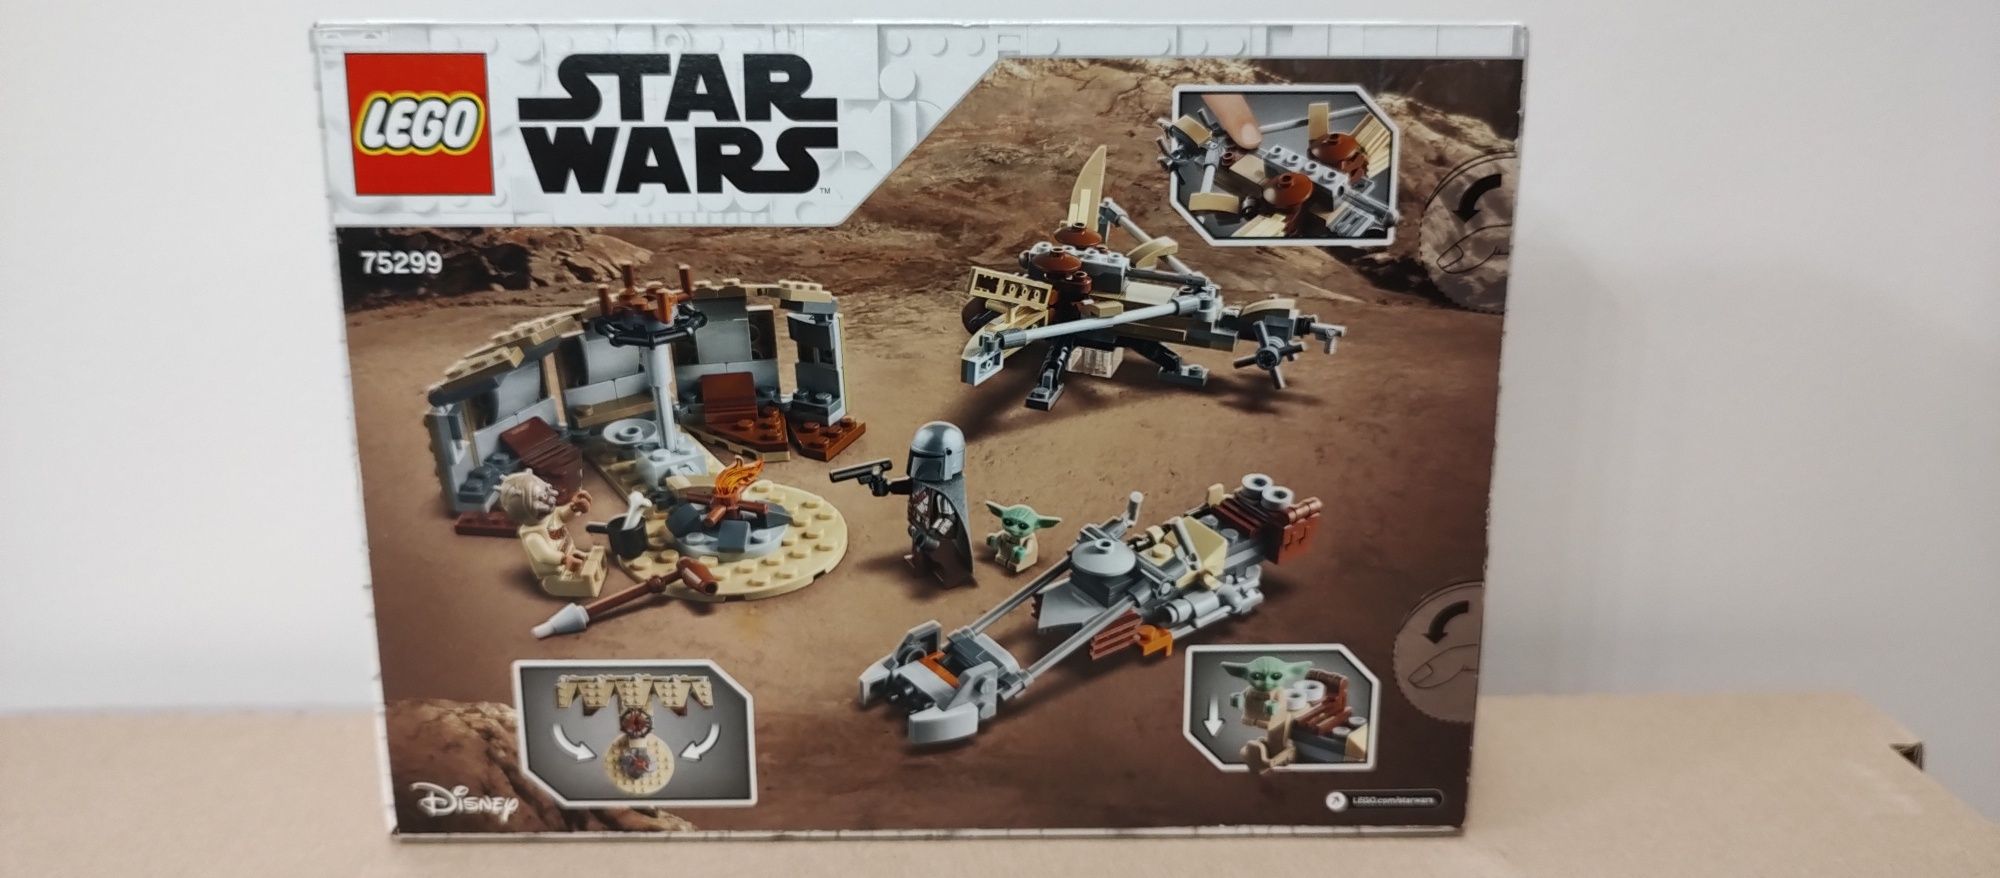 LEGO Star Wars 75299